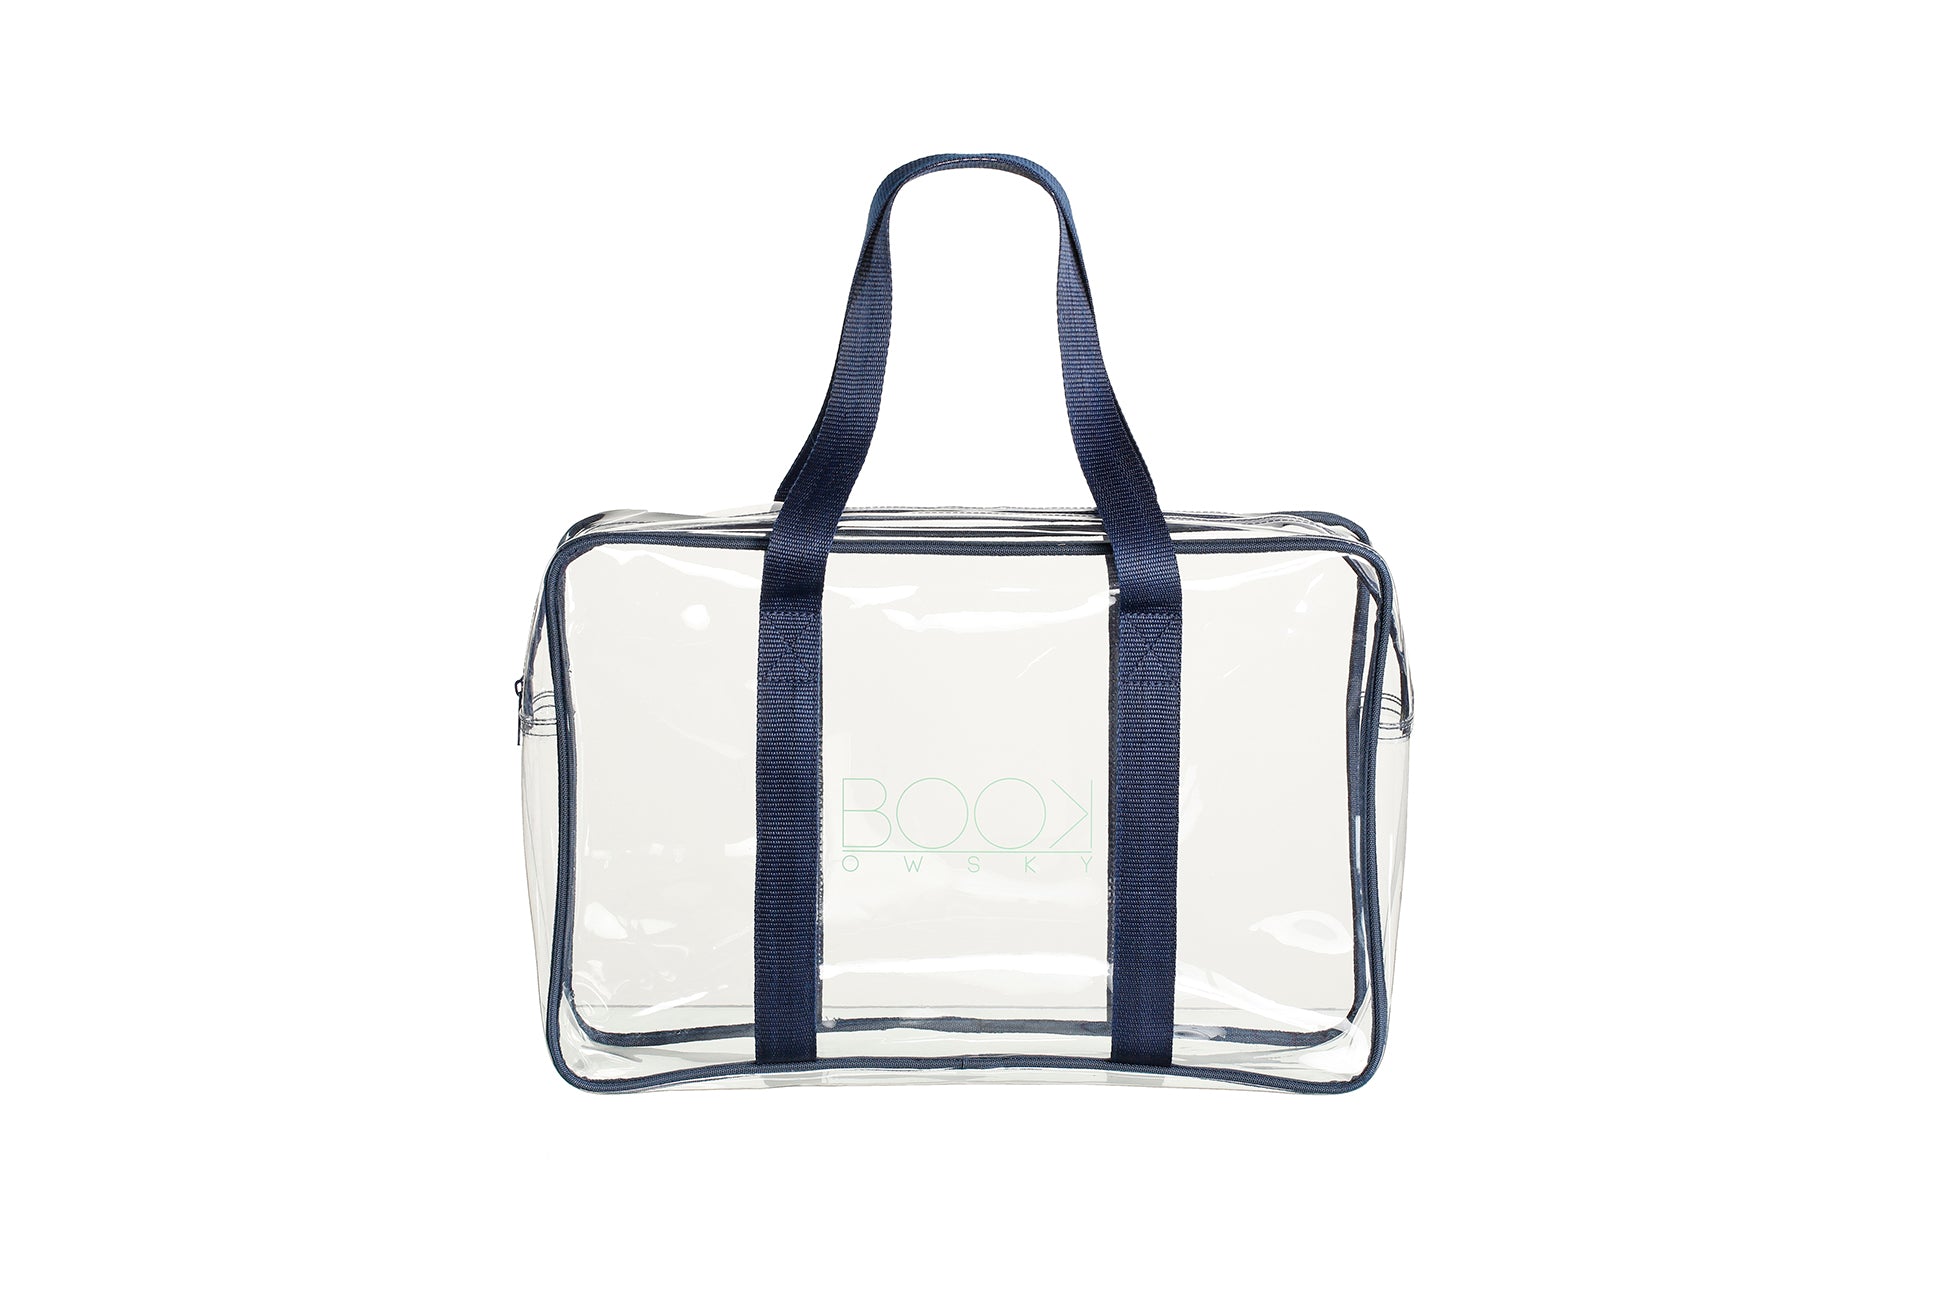 Longhandle Blau - Shop our bags – Einzelunternehmen transparent Quick bookowsky, Alexander